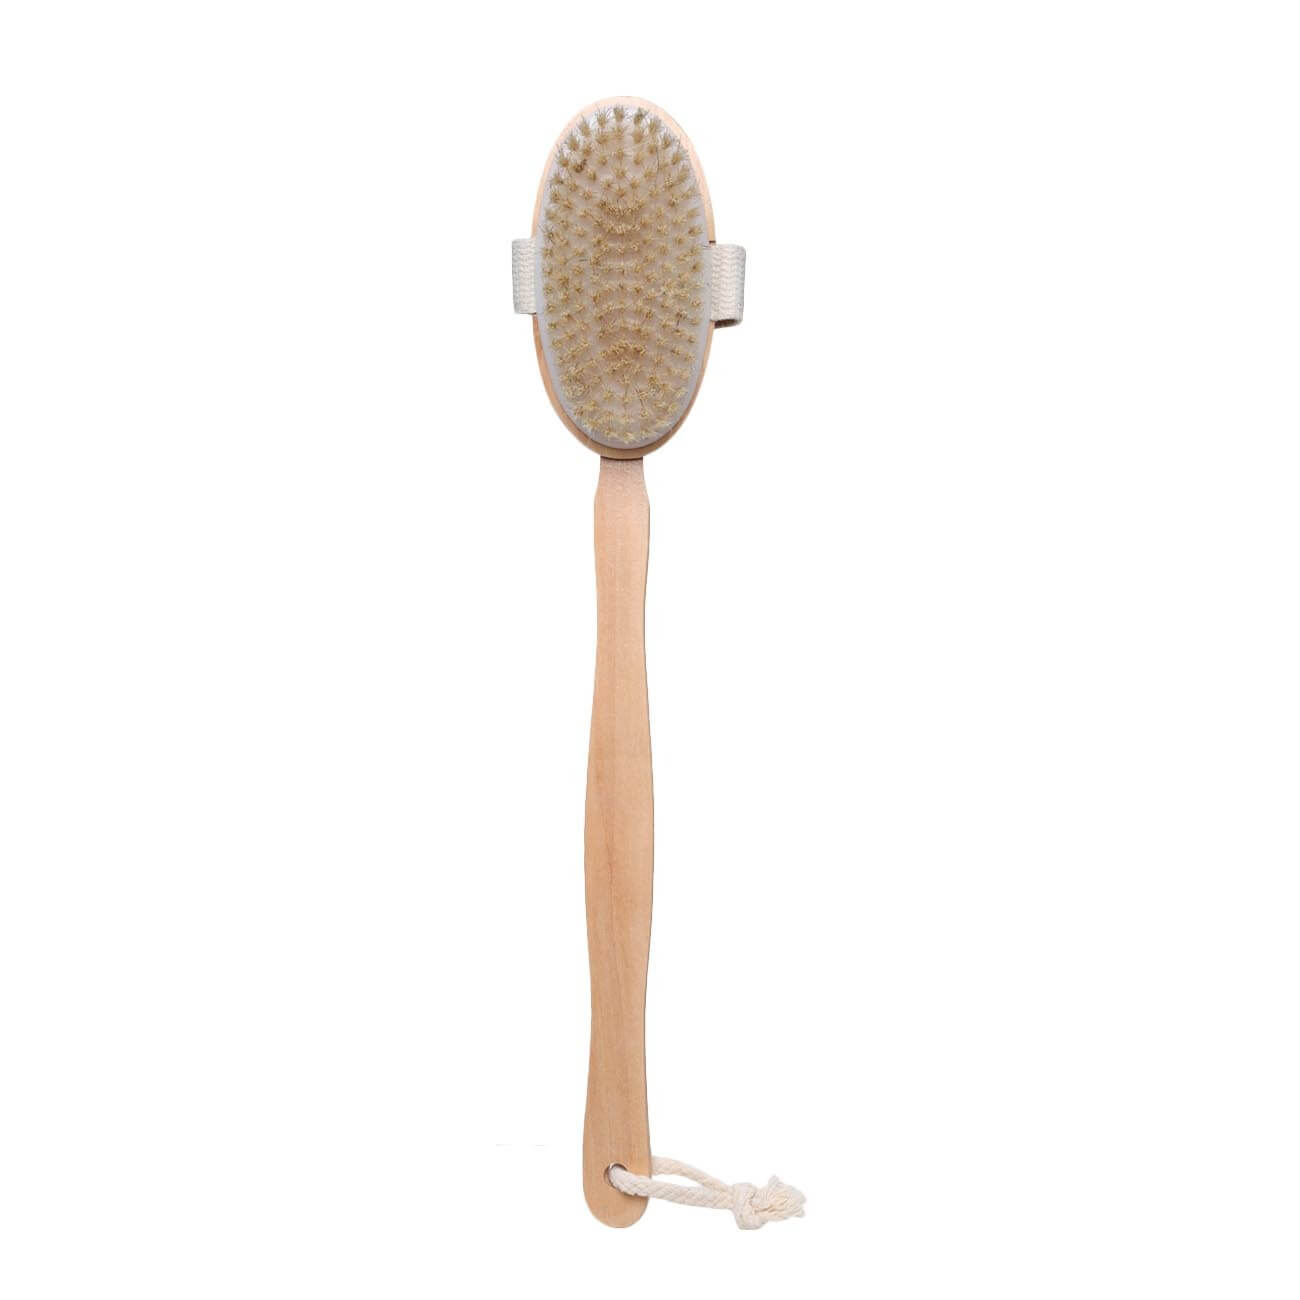 Щетка для сухого массажа, 40 см, с держателем, дерево/нейлон, Bamboo spa детская зубная щетка нейлон с ограничителем на присоске